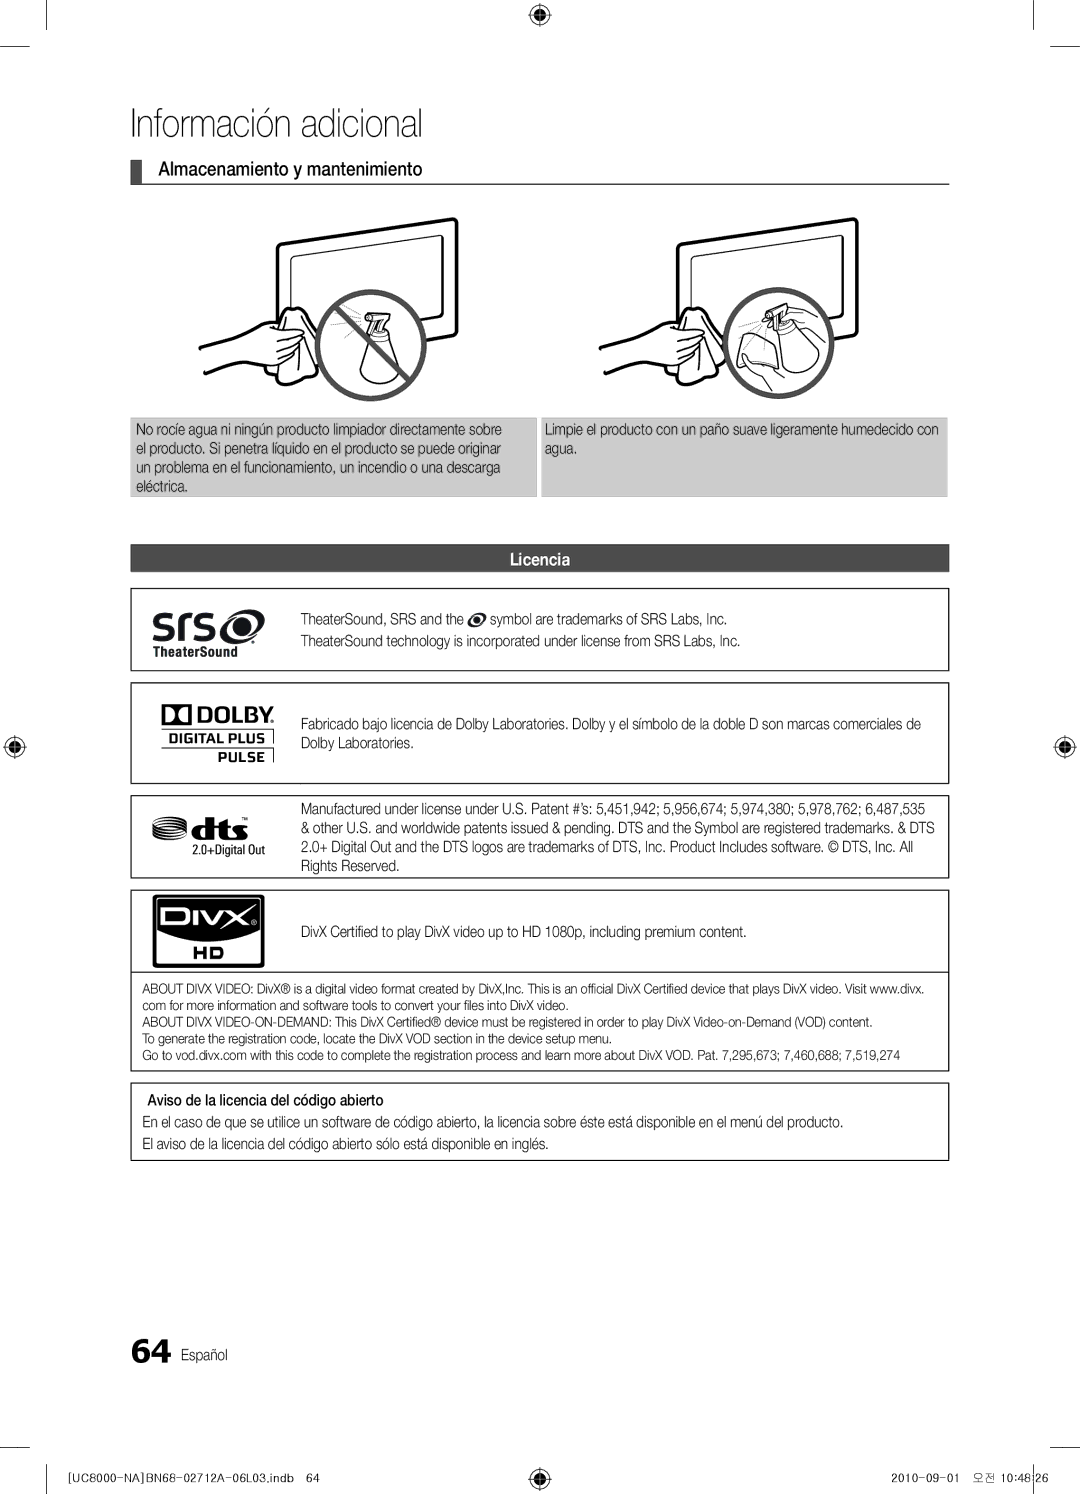 Samsung BN68-02712A-06 user manual Almacenamiento y mantenimiento, Licencia 